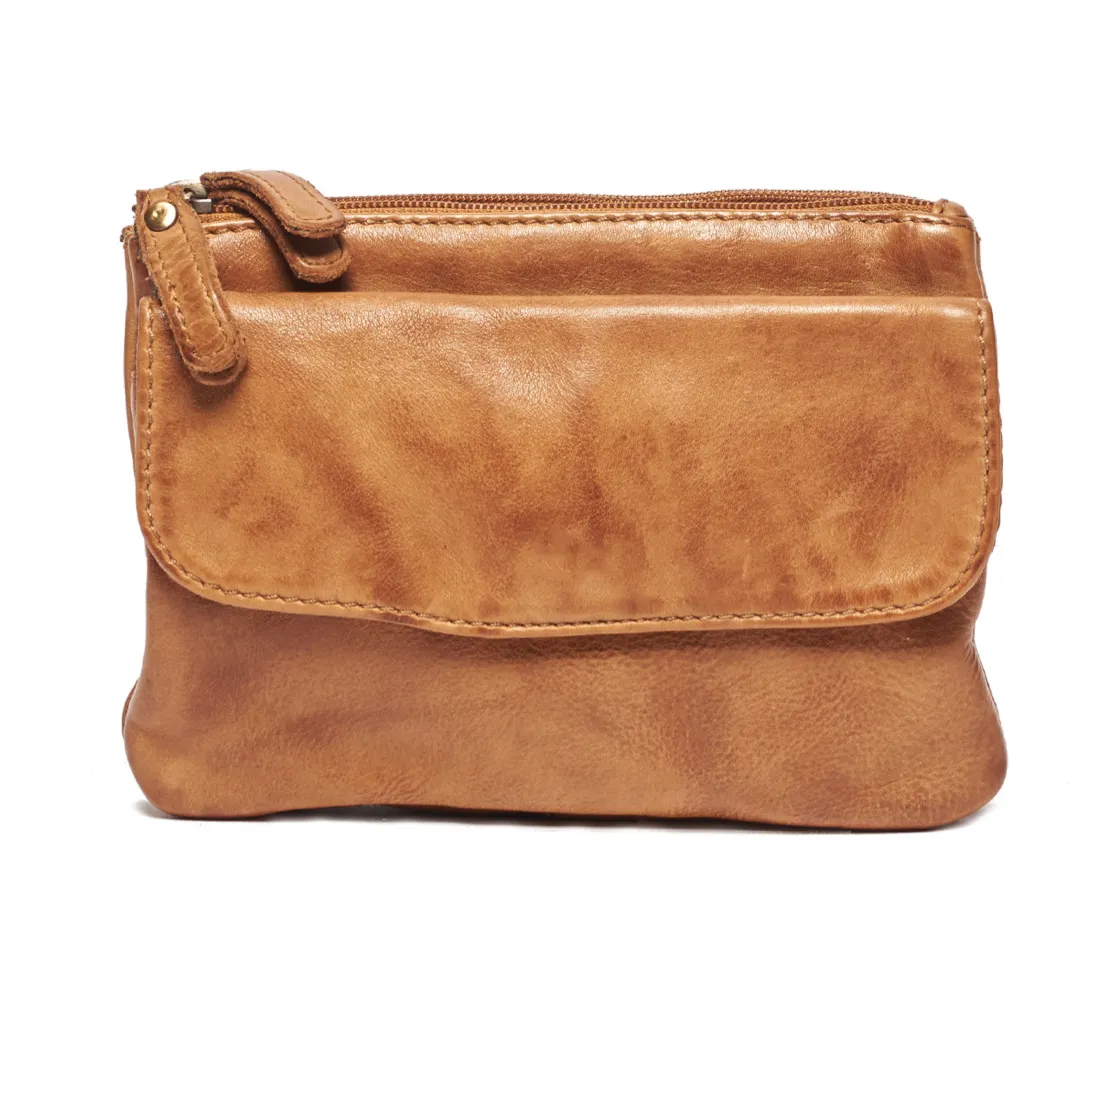 Margaret Leather Bag - Tan